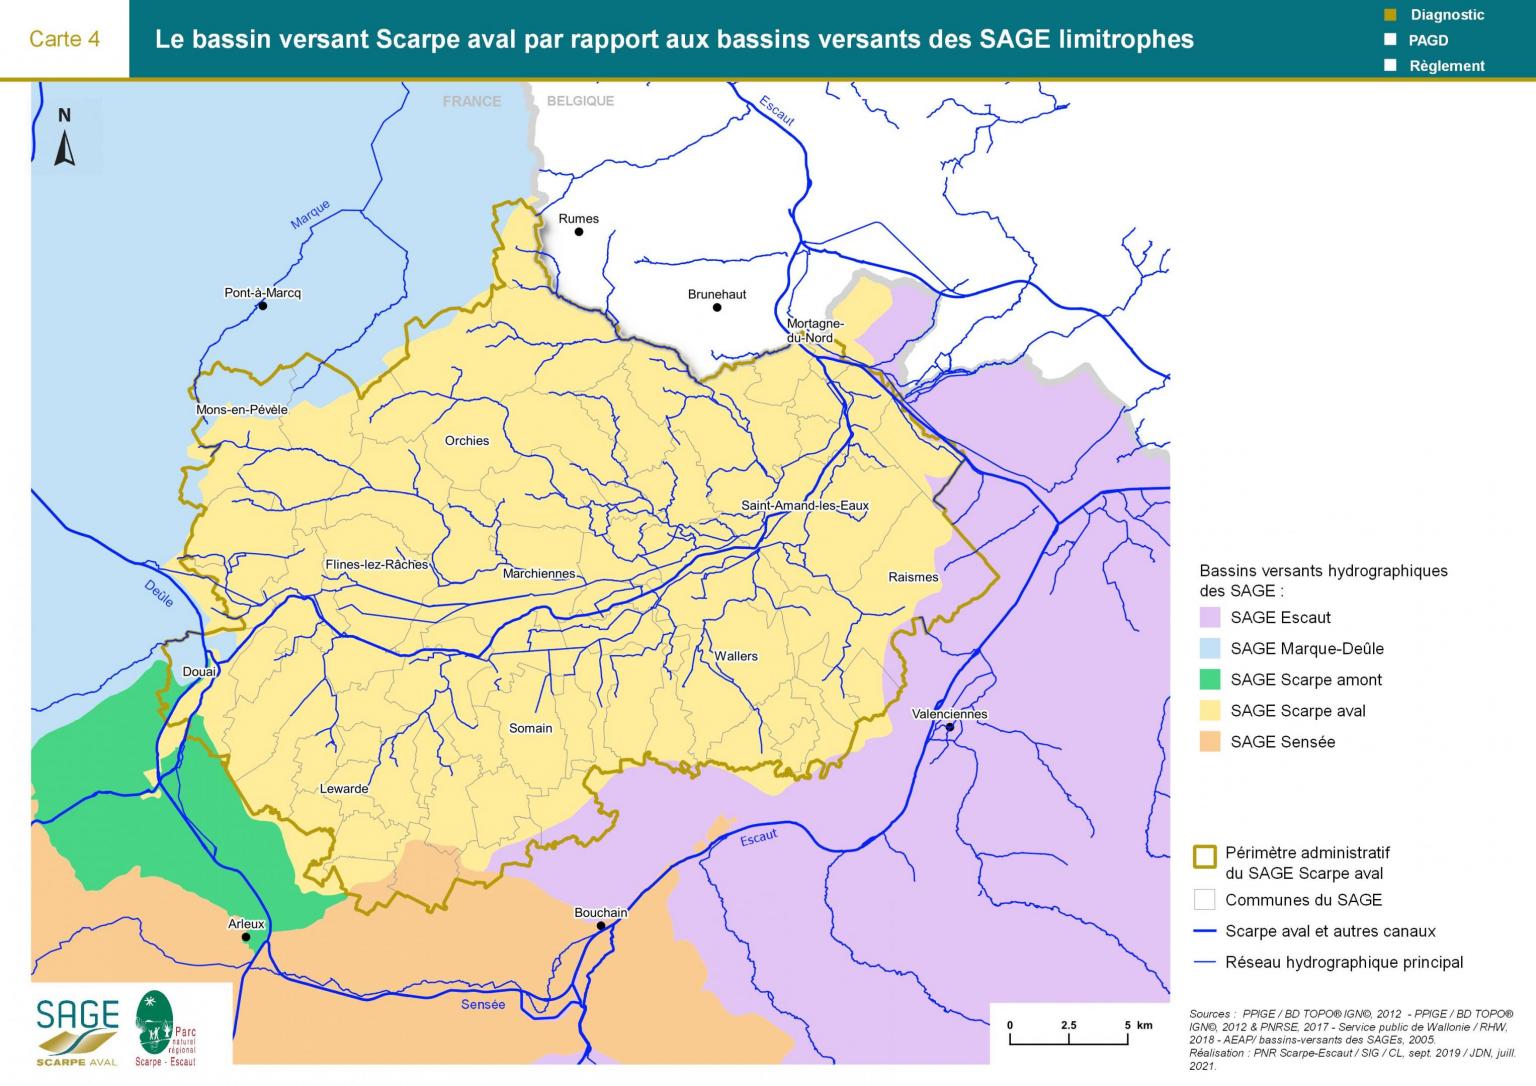 Etat des lieux - Carte 4 : Le bassin versant Scarpe aval par rapport aux bassins versants des SAGE limitrophes